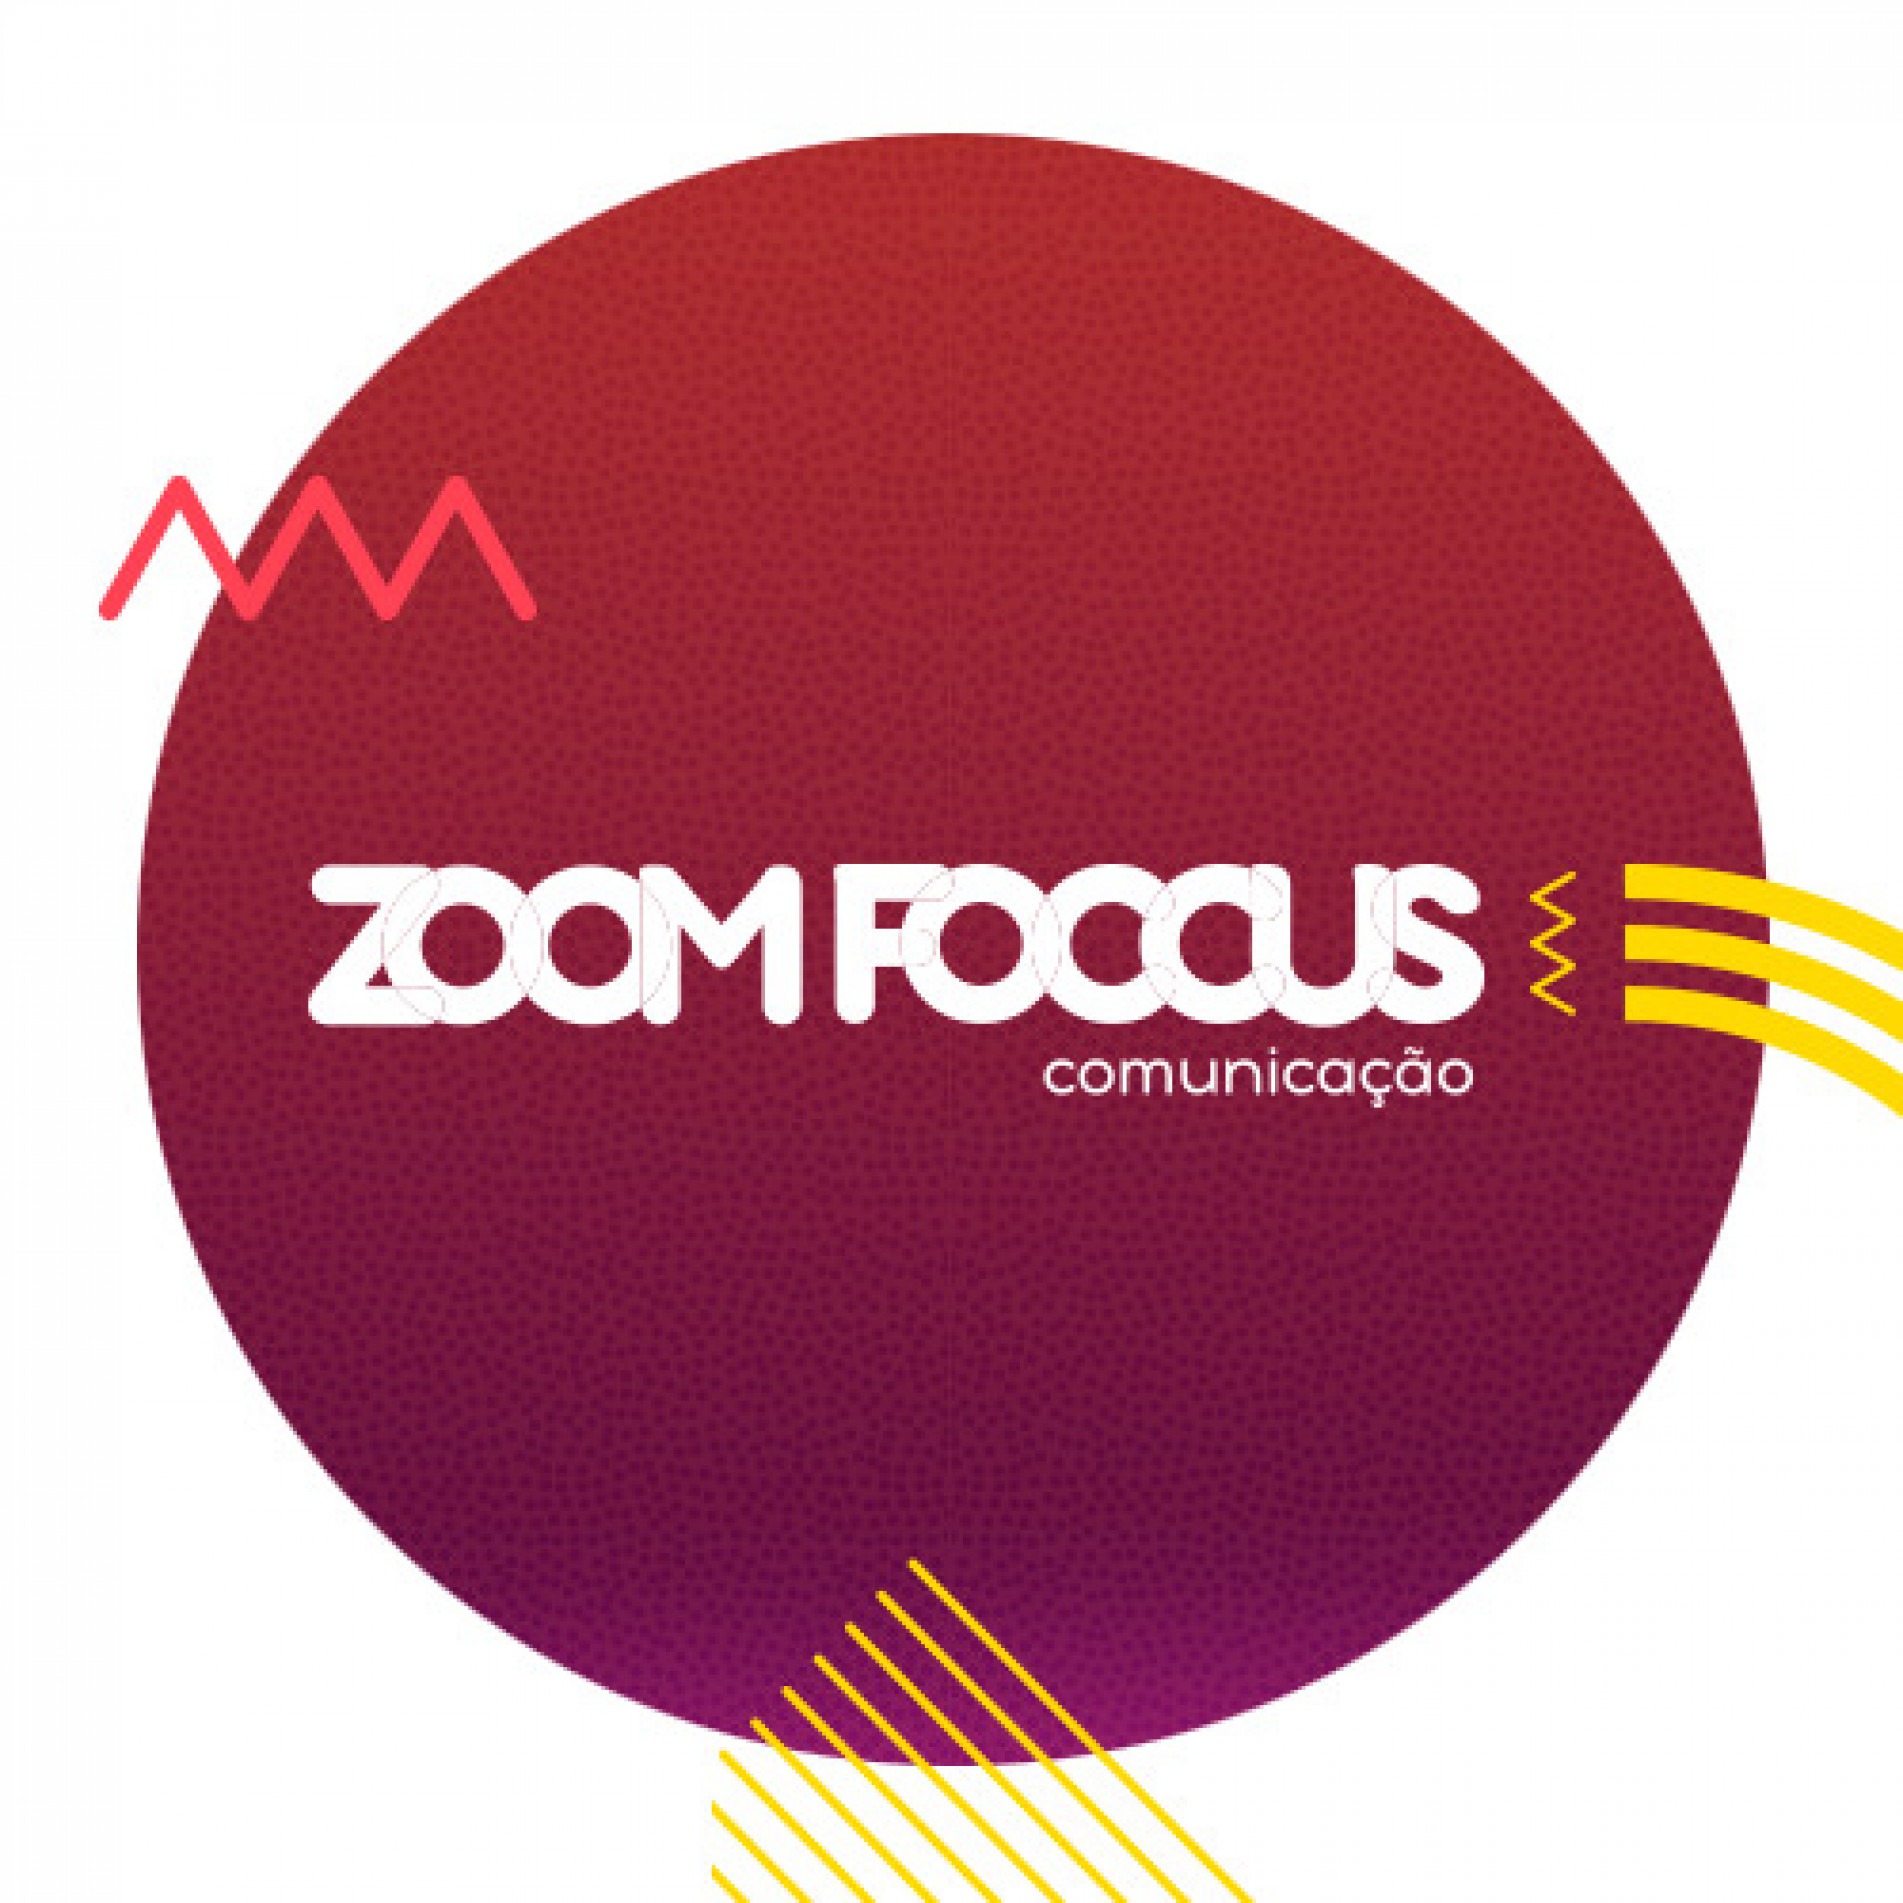 Zoomfoccus Comunicação, o empenho e a dedicação é a energia que move a evolução e a felicidade.